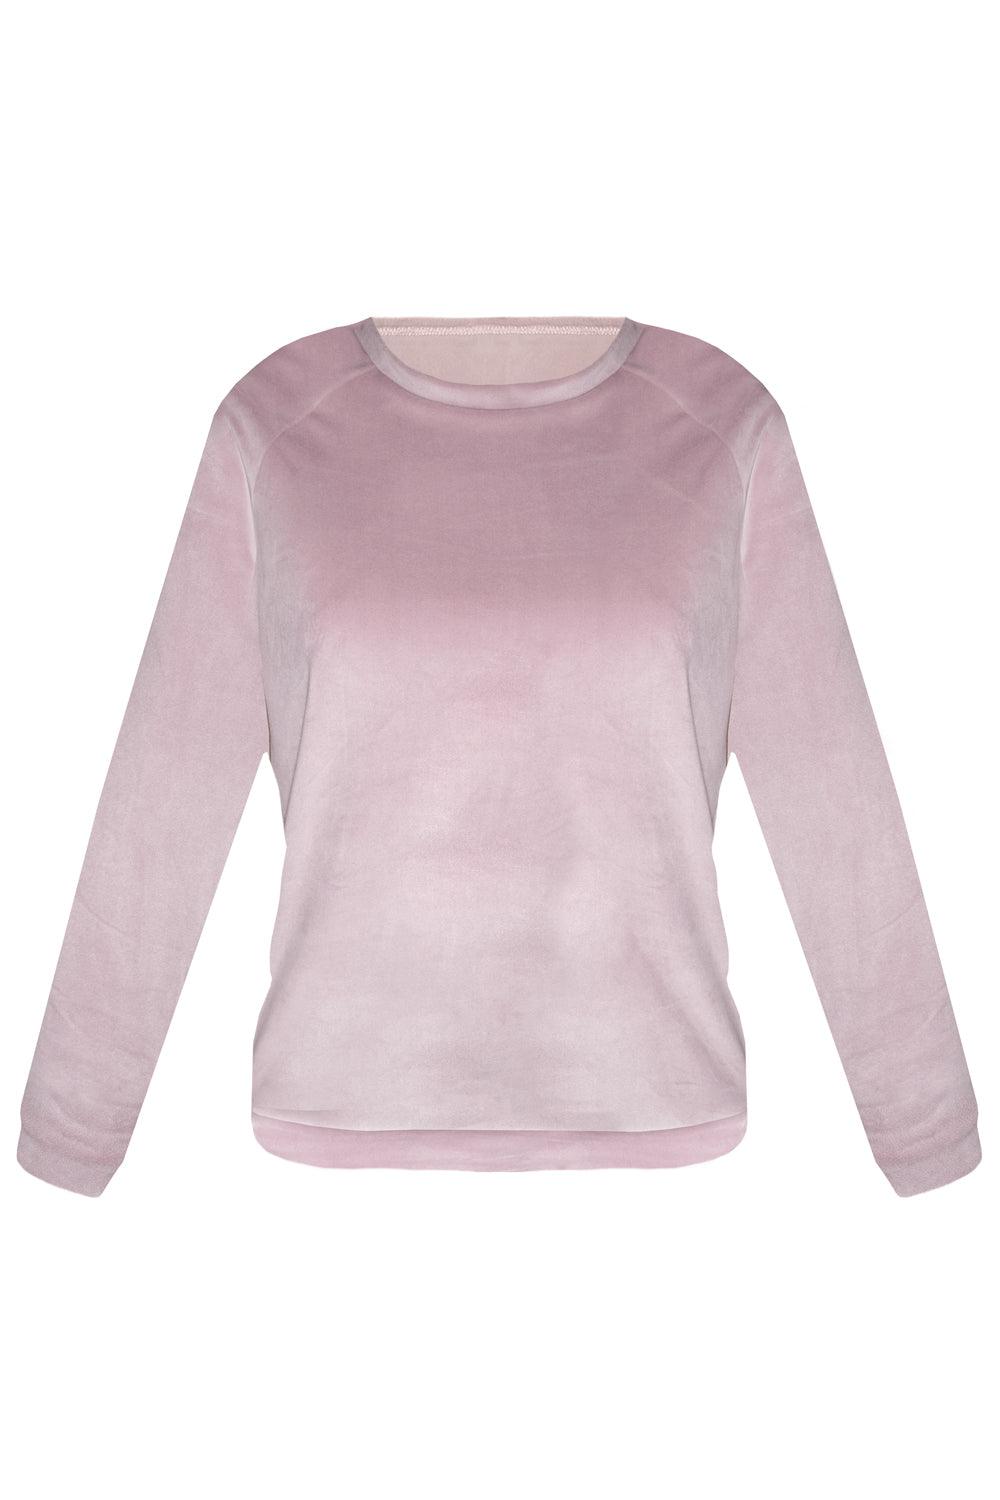 Foxy Blush sweater - Sweater by yesUndress. Shop on yesUndress